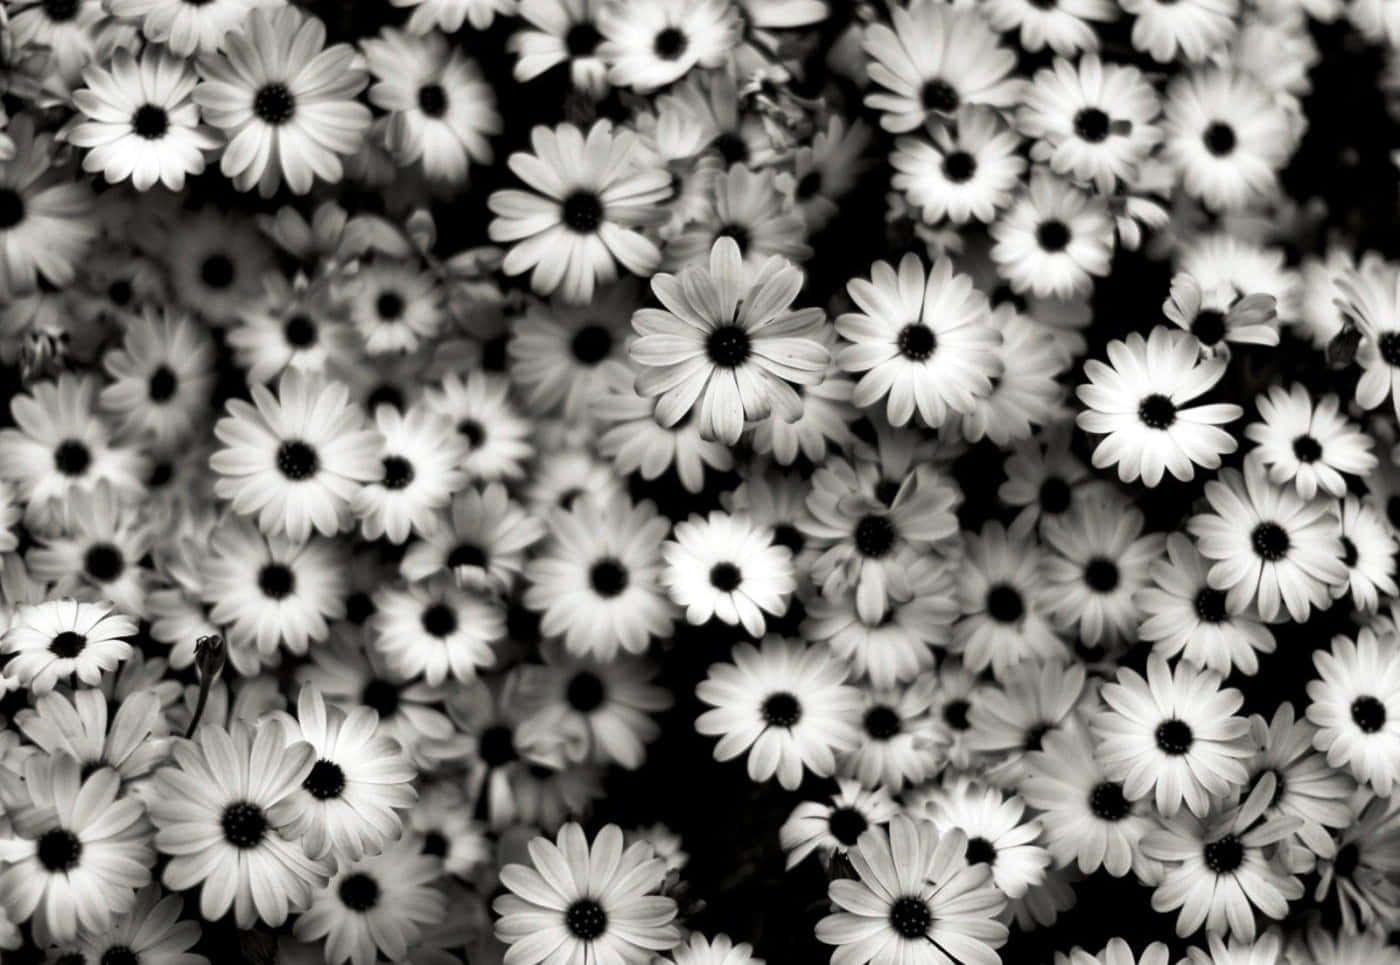 Black And White Aesthetic Daisy Flower Wallpaper